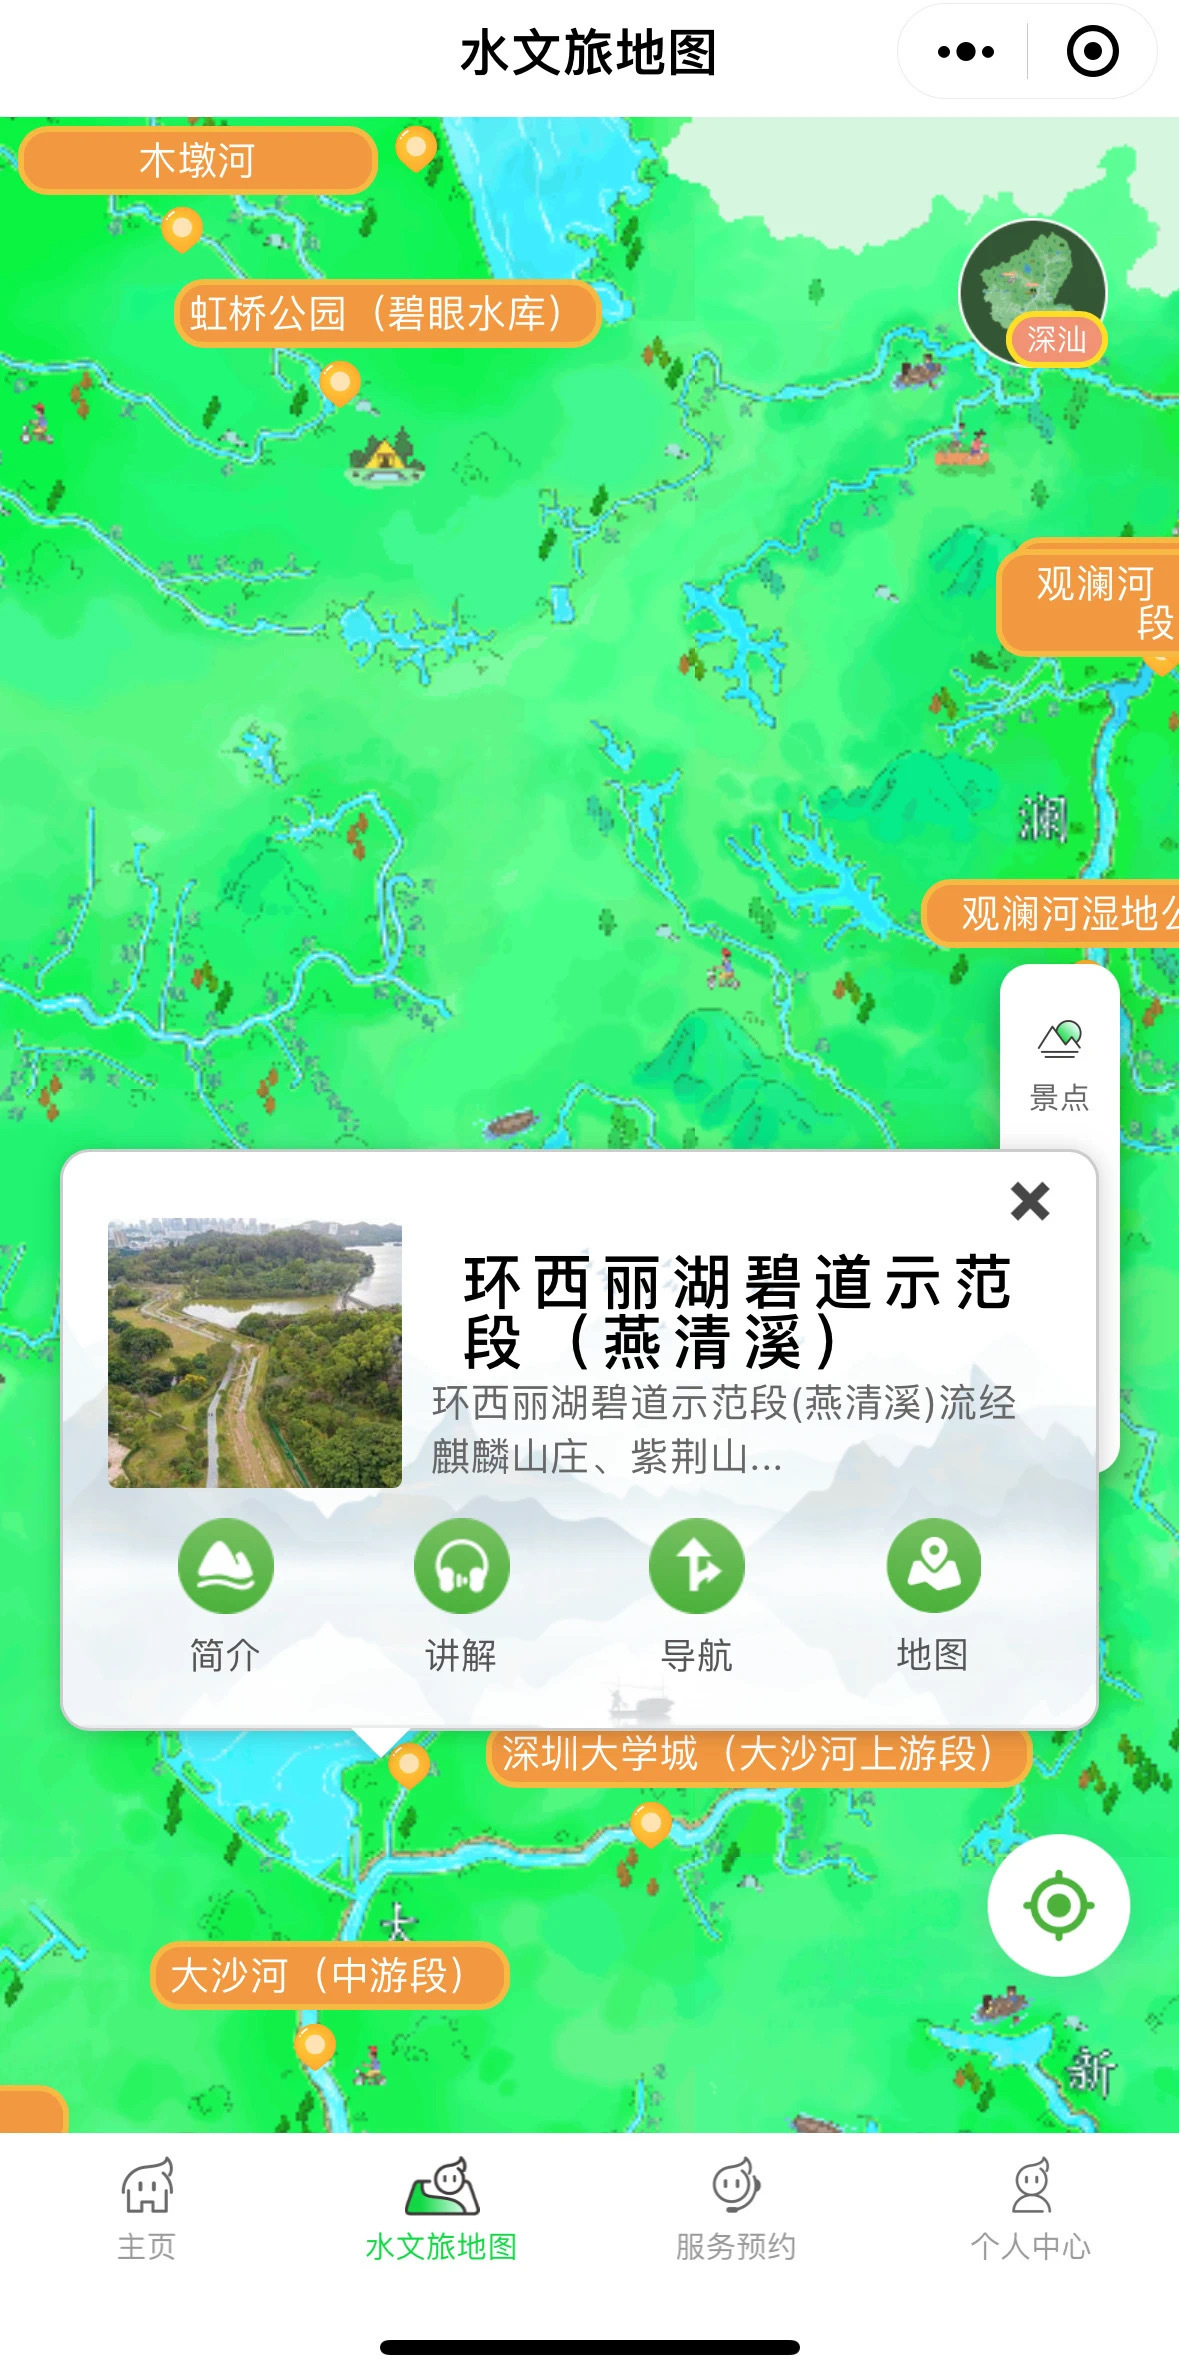 @深圳中小学生：“追寻水文旅地图 打卡美丽河湖”主题征文比赛活动开始啦